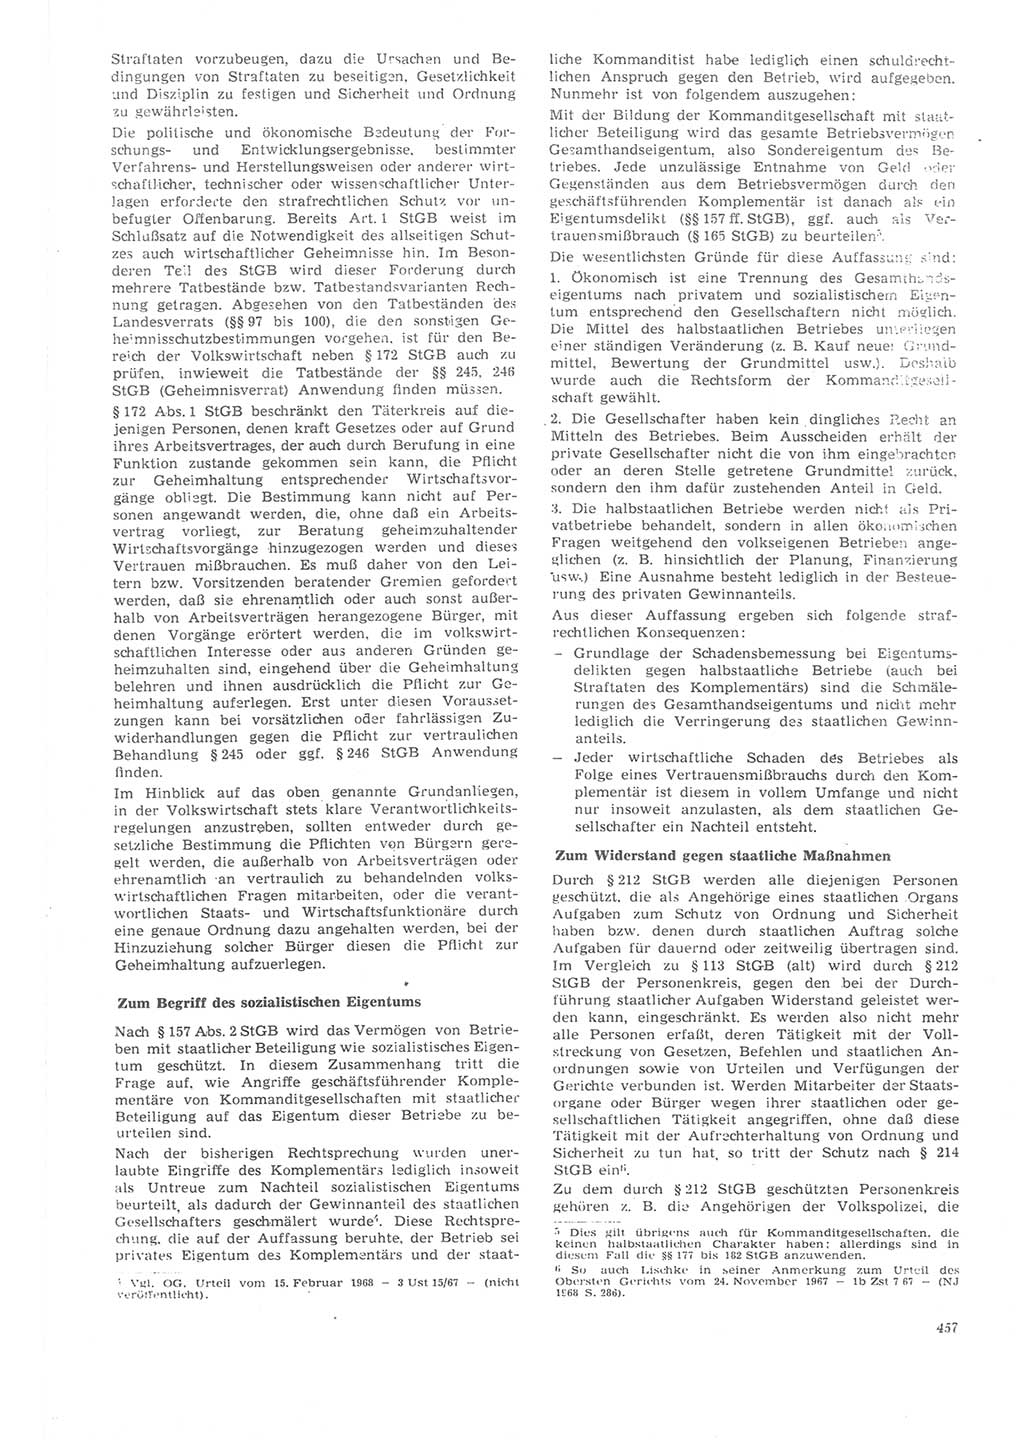 Neue Justiz (NJ), Zeitschrift für Recht und Rechtswissenschaft [Deutsche Demokratische Republik (DDR)], 22. Jahrgang 1968, Seite 457 (NJ DDR 1968, S. 457)